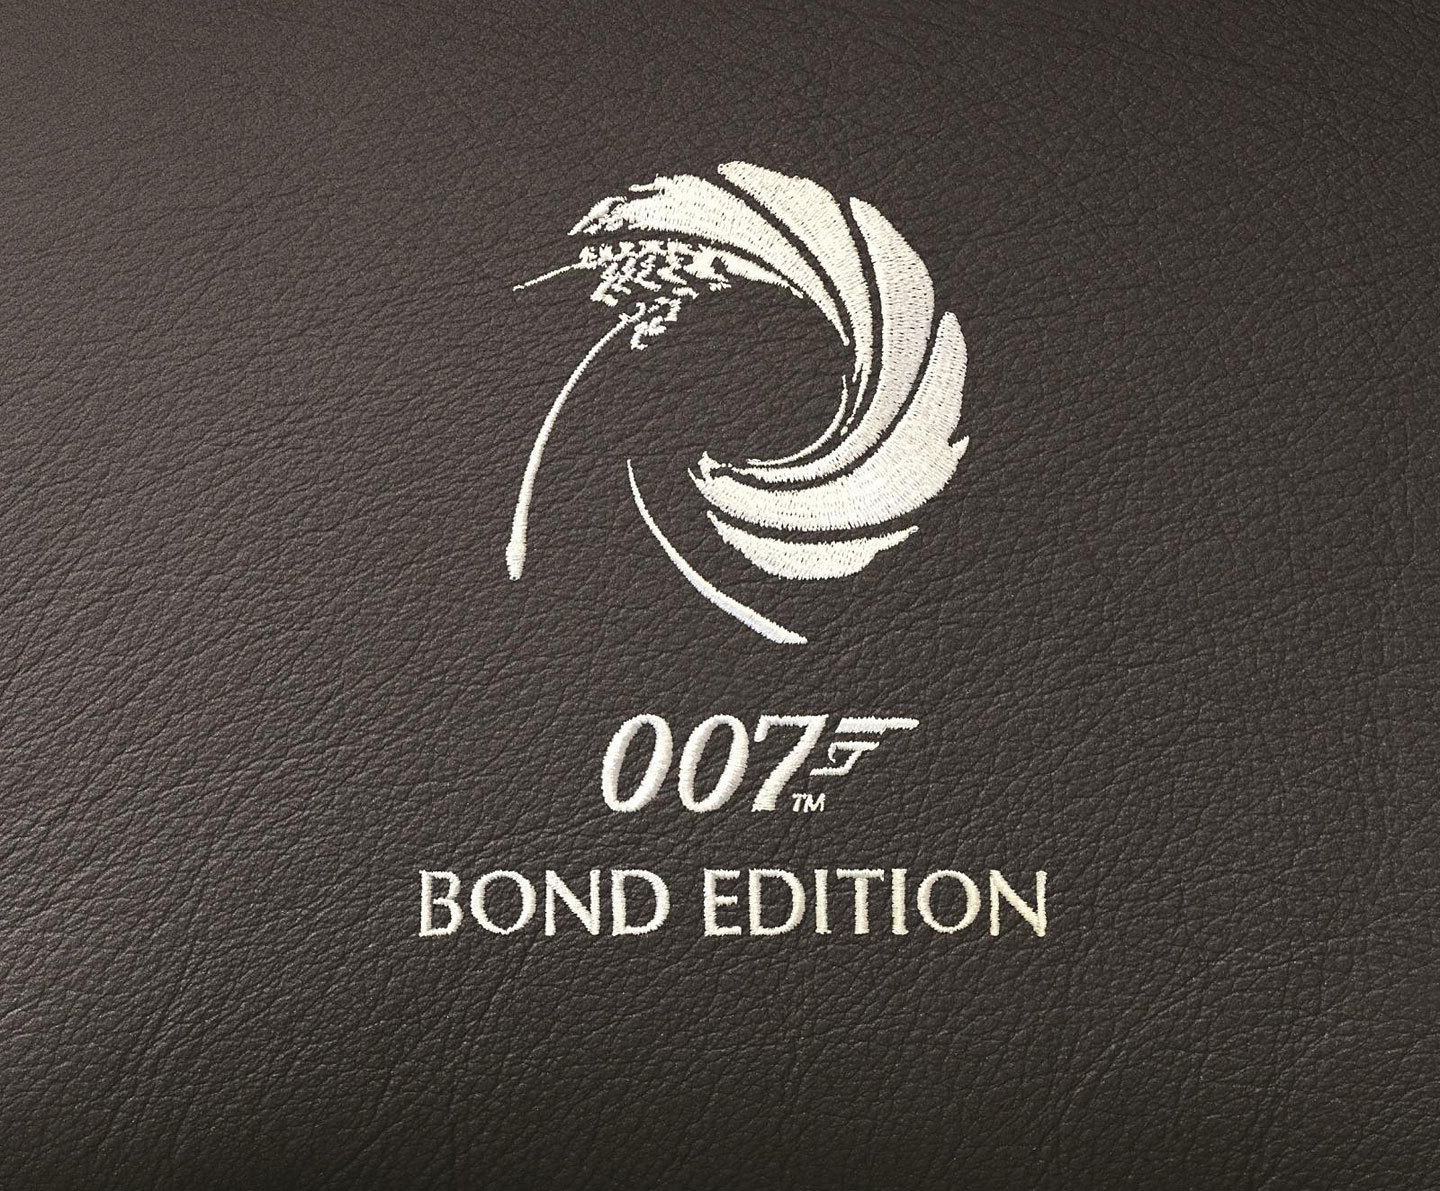 Aston Martin vytvořil speciální edici ve jménu agenta 007